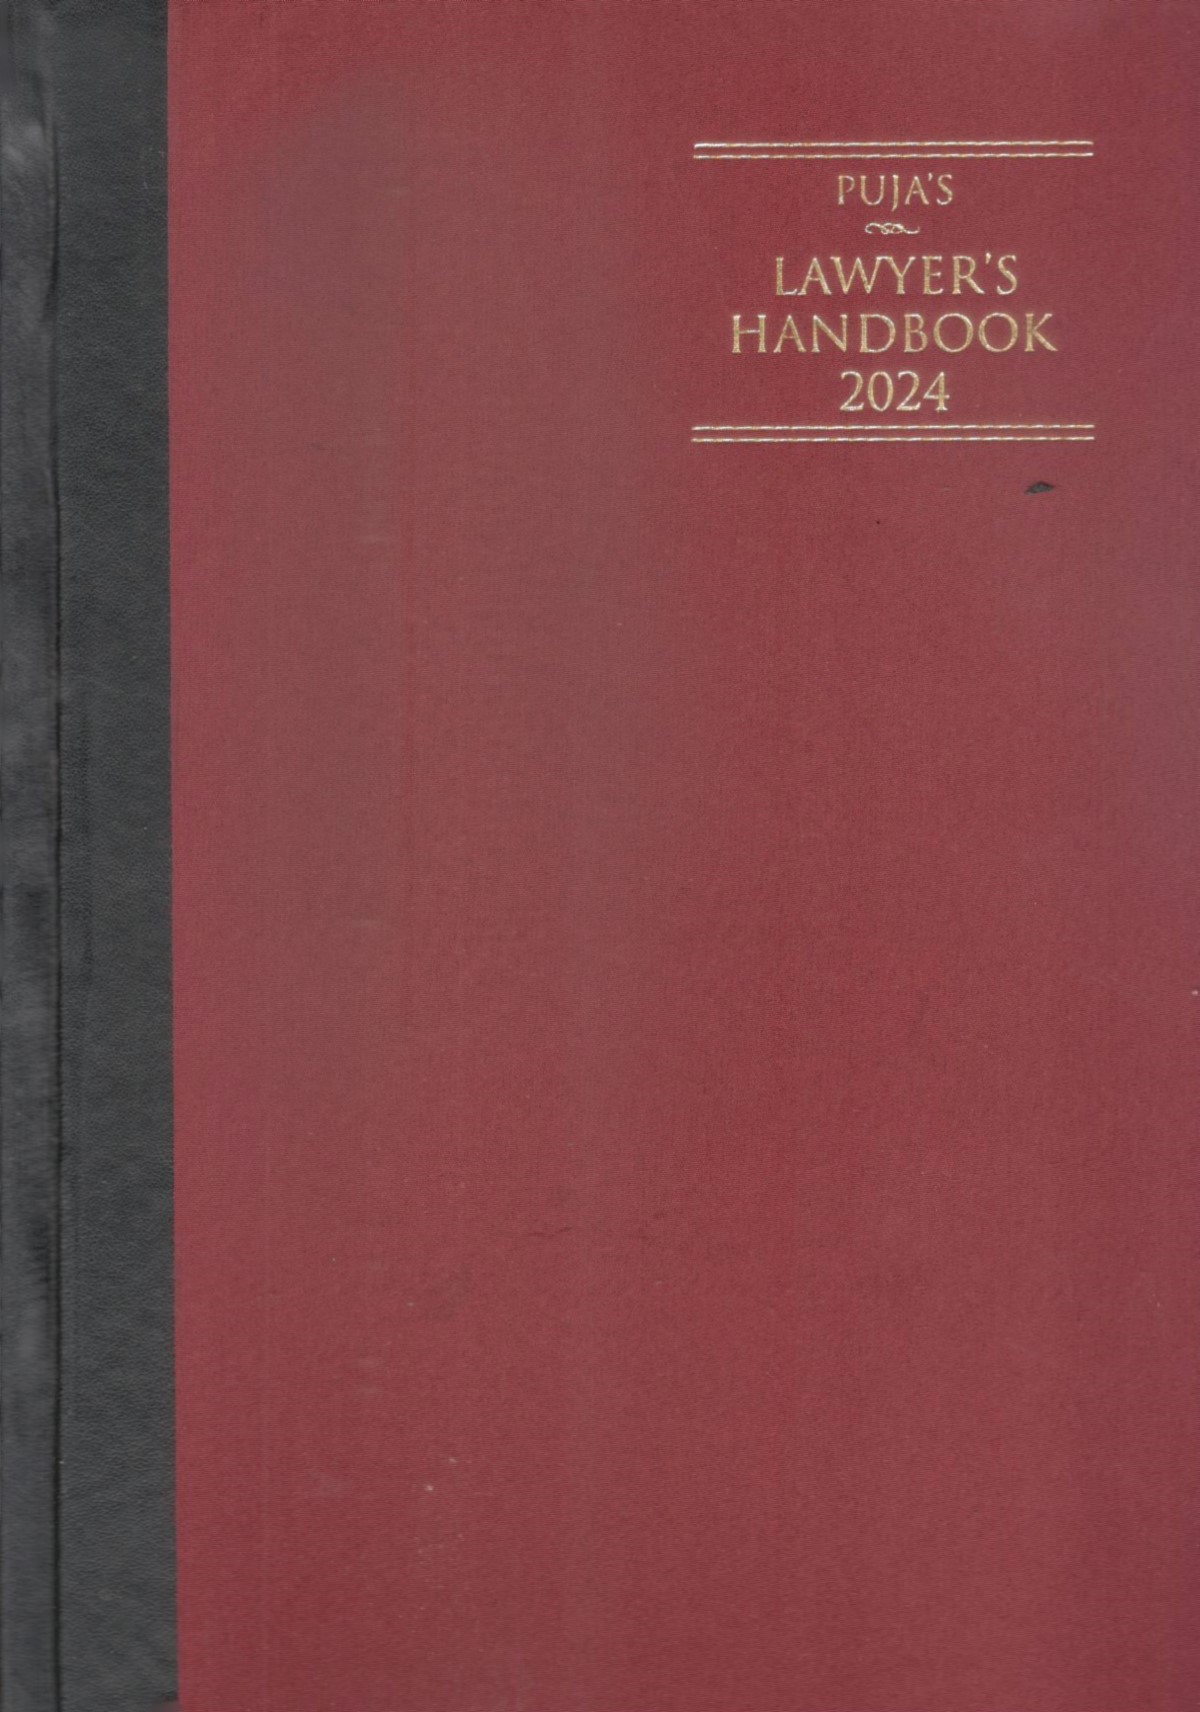 Puja’s Lawyer’s Handbook 2024 - Register Maroon